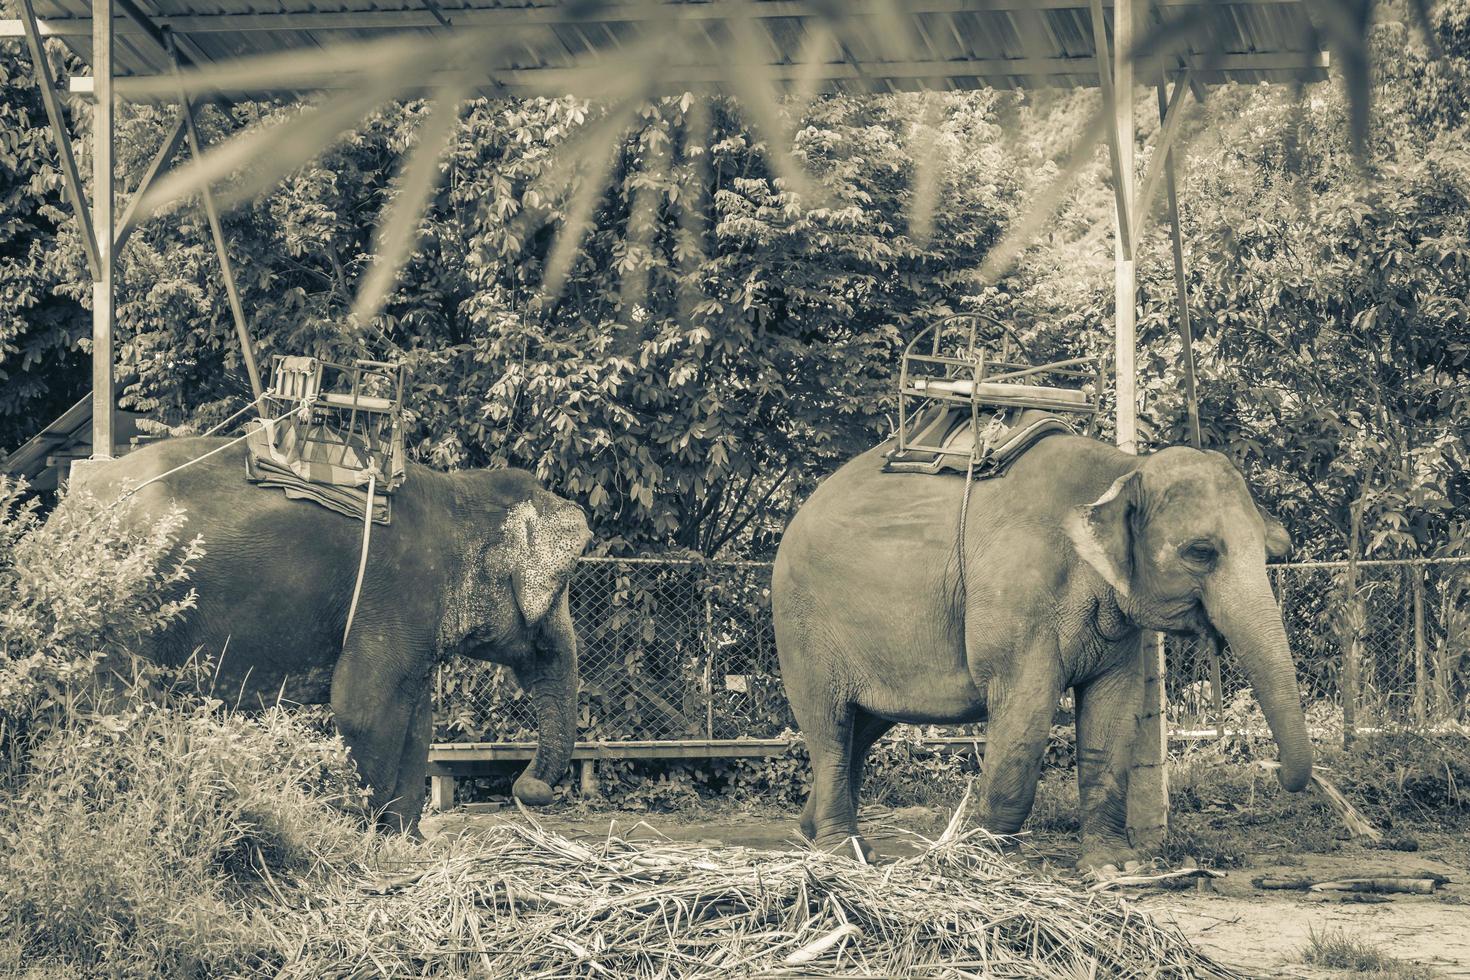 asiatische elefanten zum reiten im tropischen regenwaldpark koh samui thailand. foto